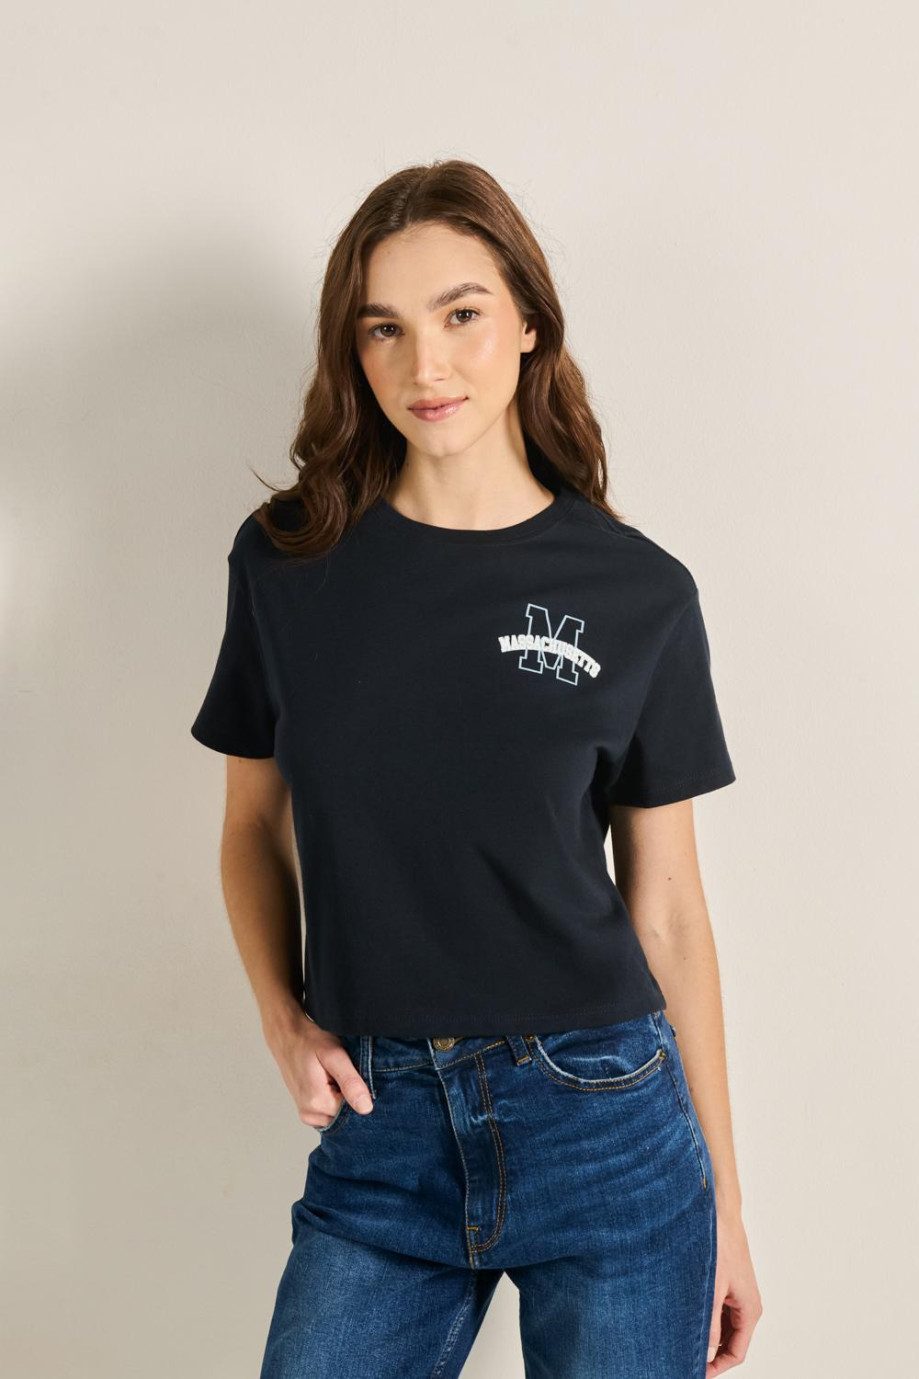 Camiseta azul intensa crop top con texto college